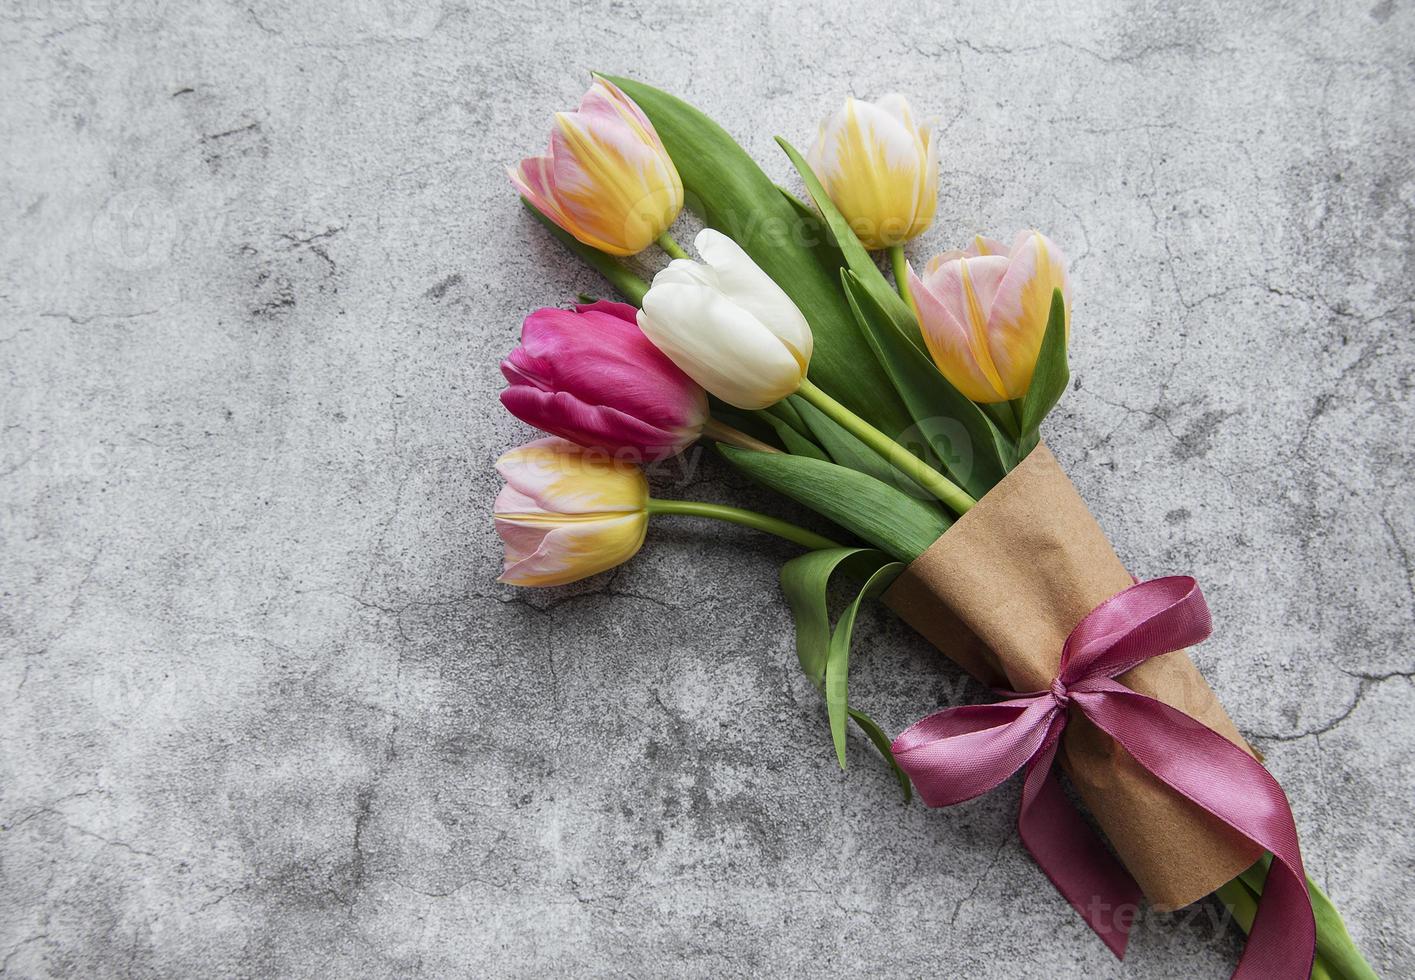 tulipes de printemps sur fond de béton photo